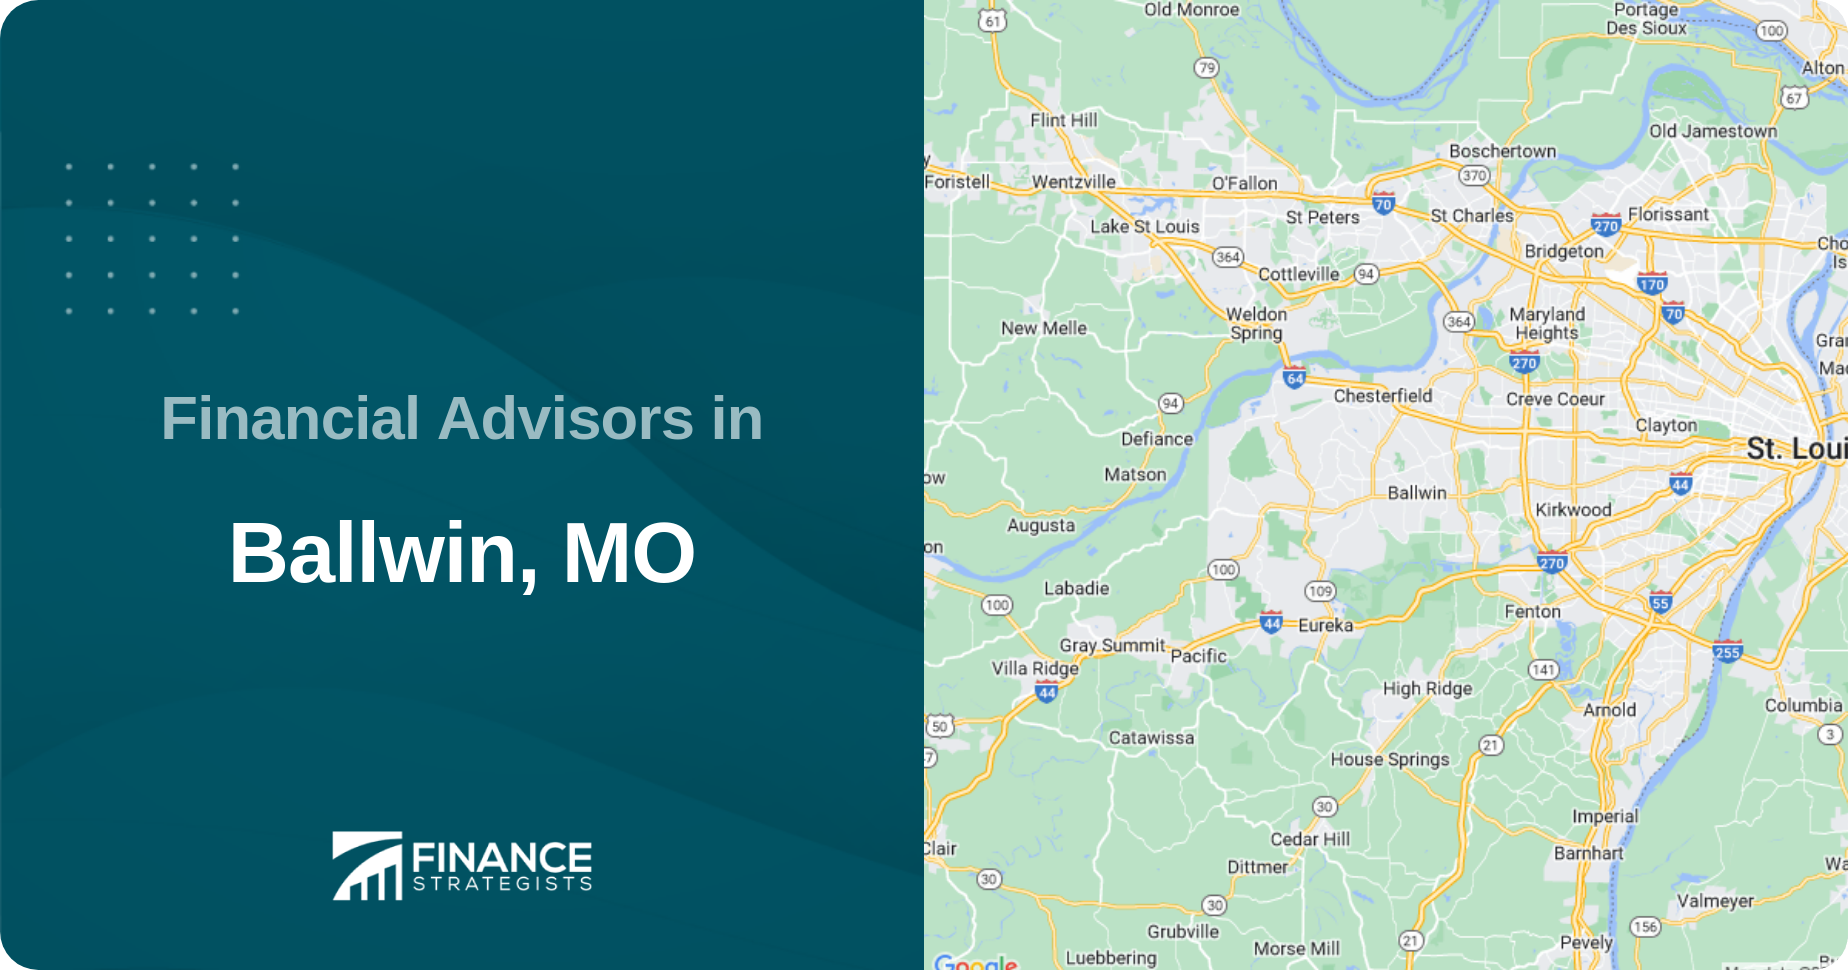 Financial Advisors in Ballwin, MO